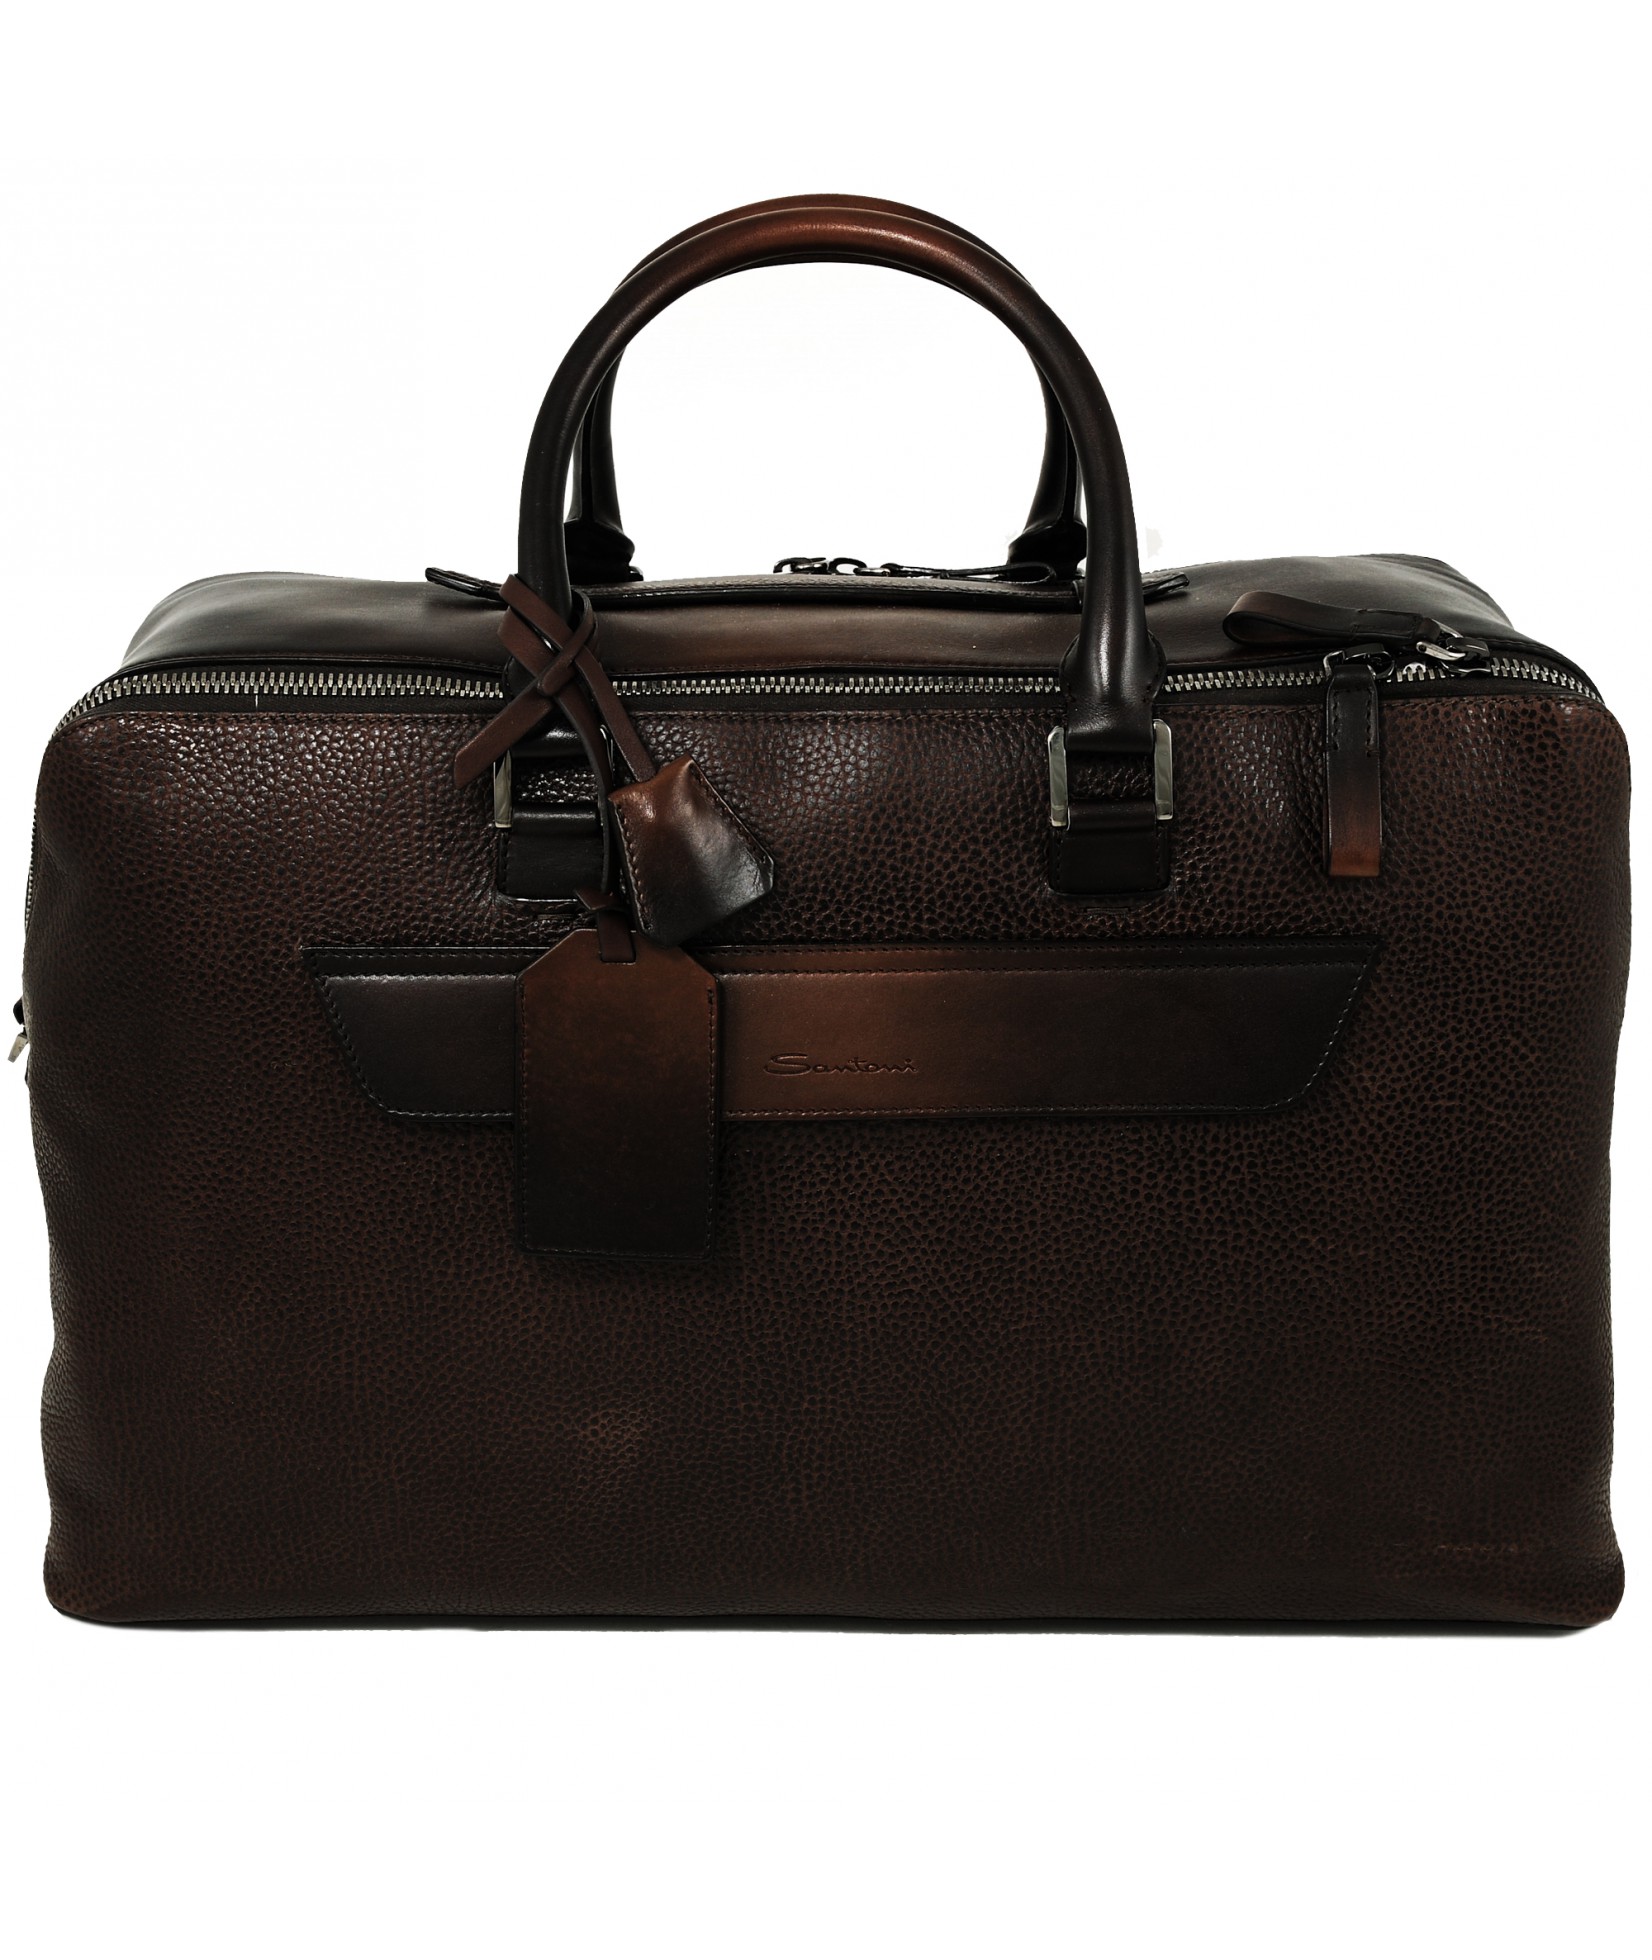  Дорожная сумка Santoni коричневая (31844)